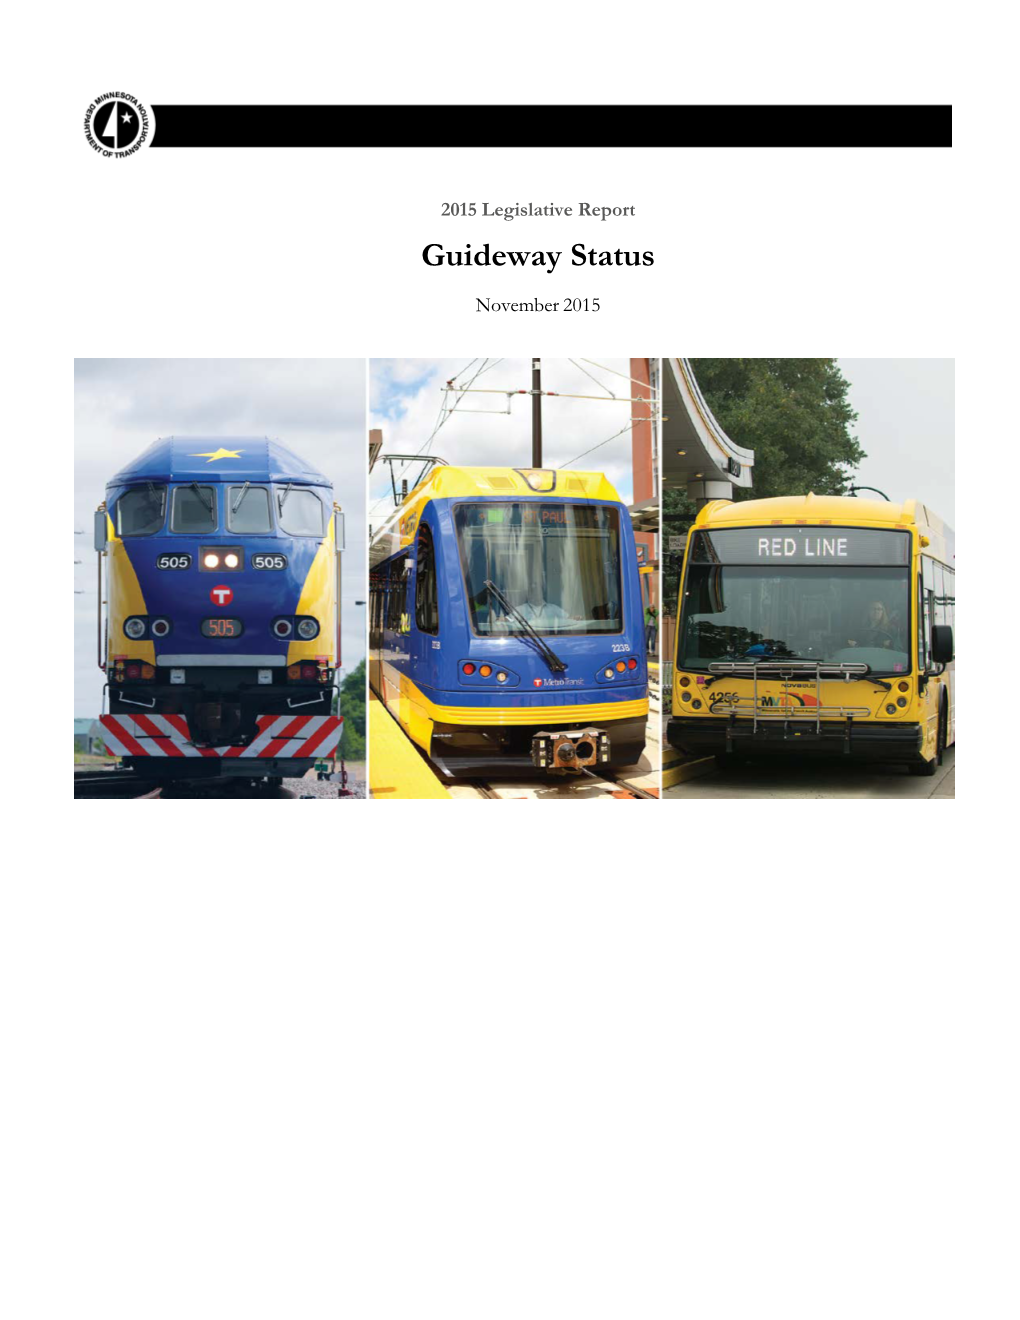 2015 Guideway Status Report